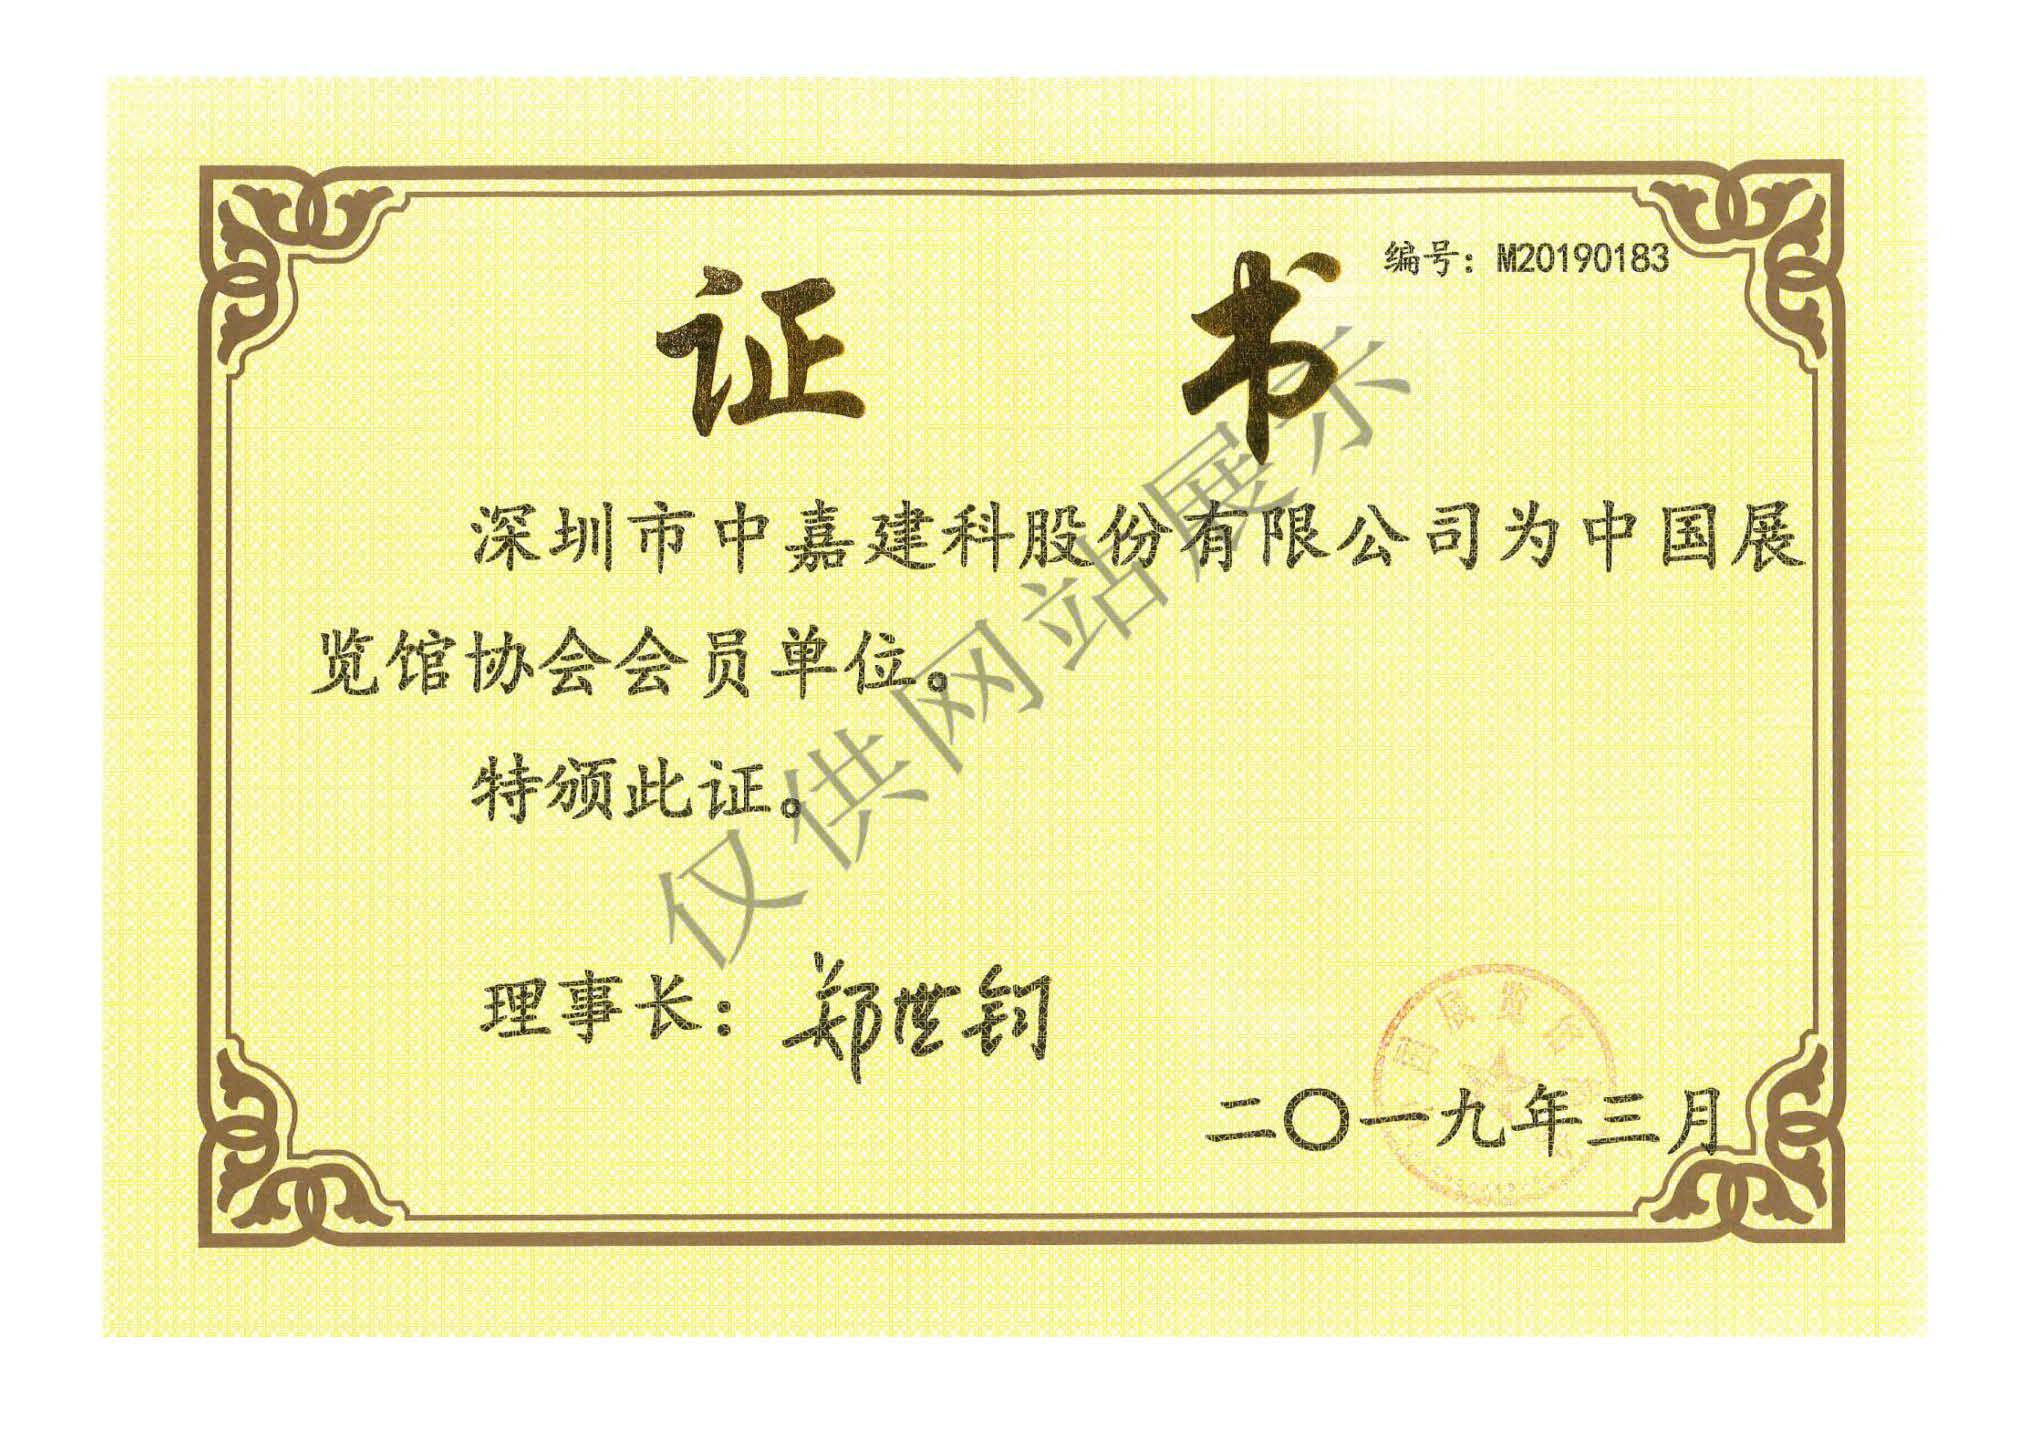 中国展览馆协会会员证书